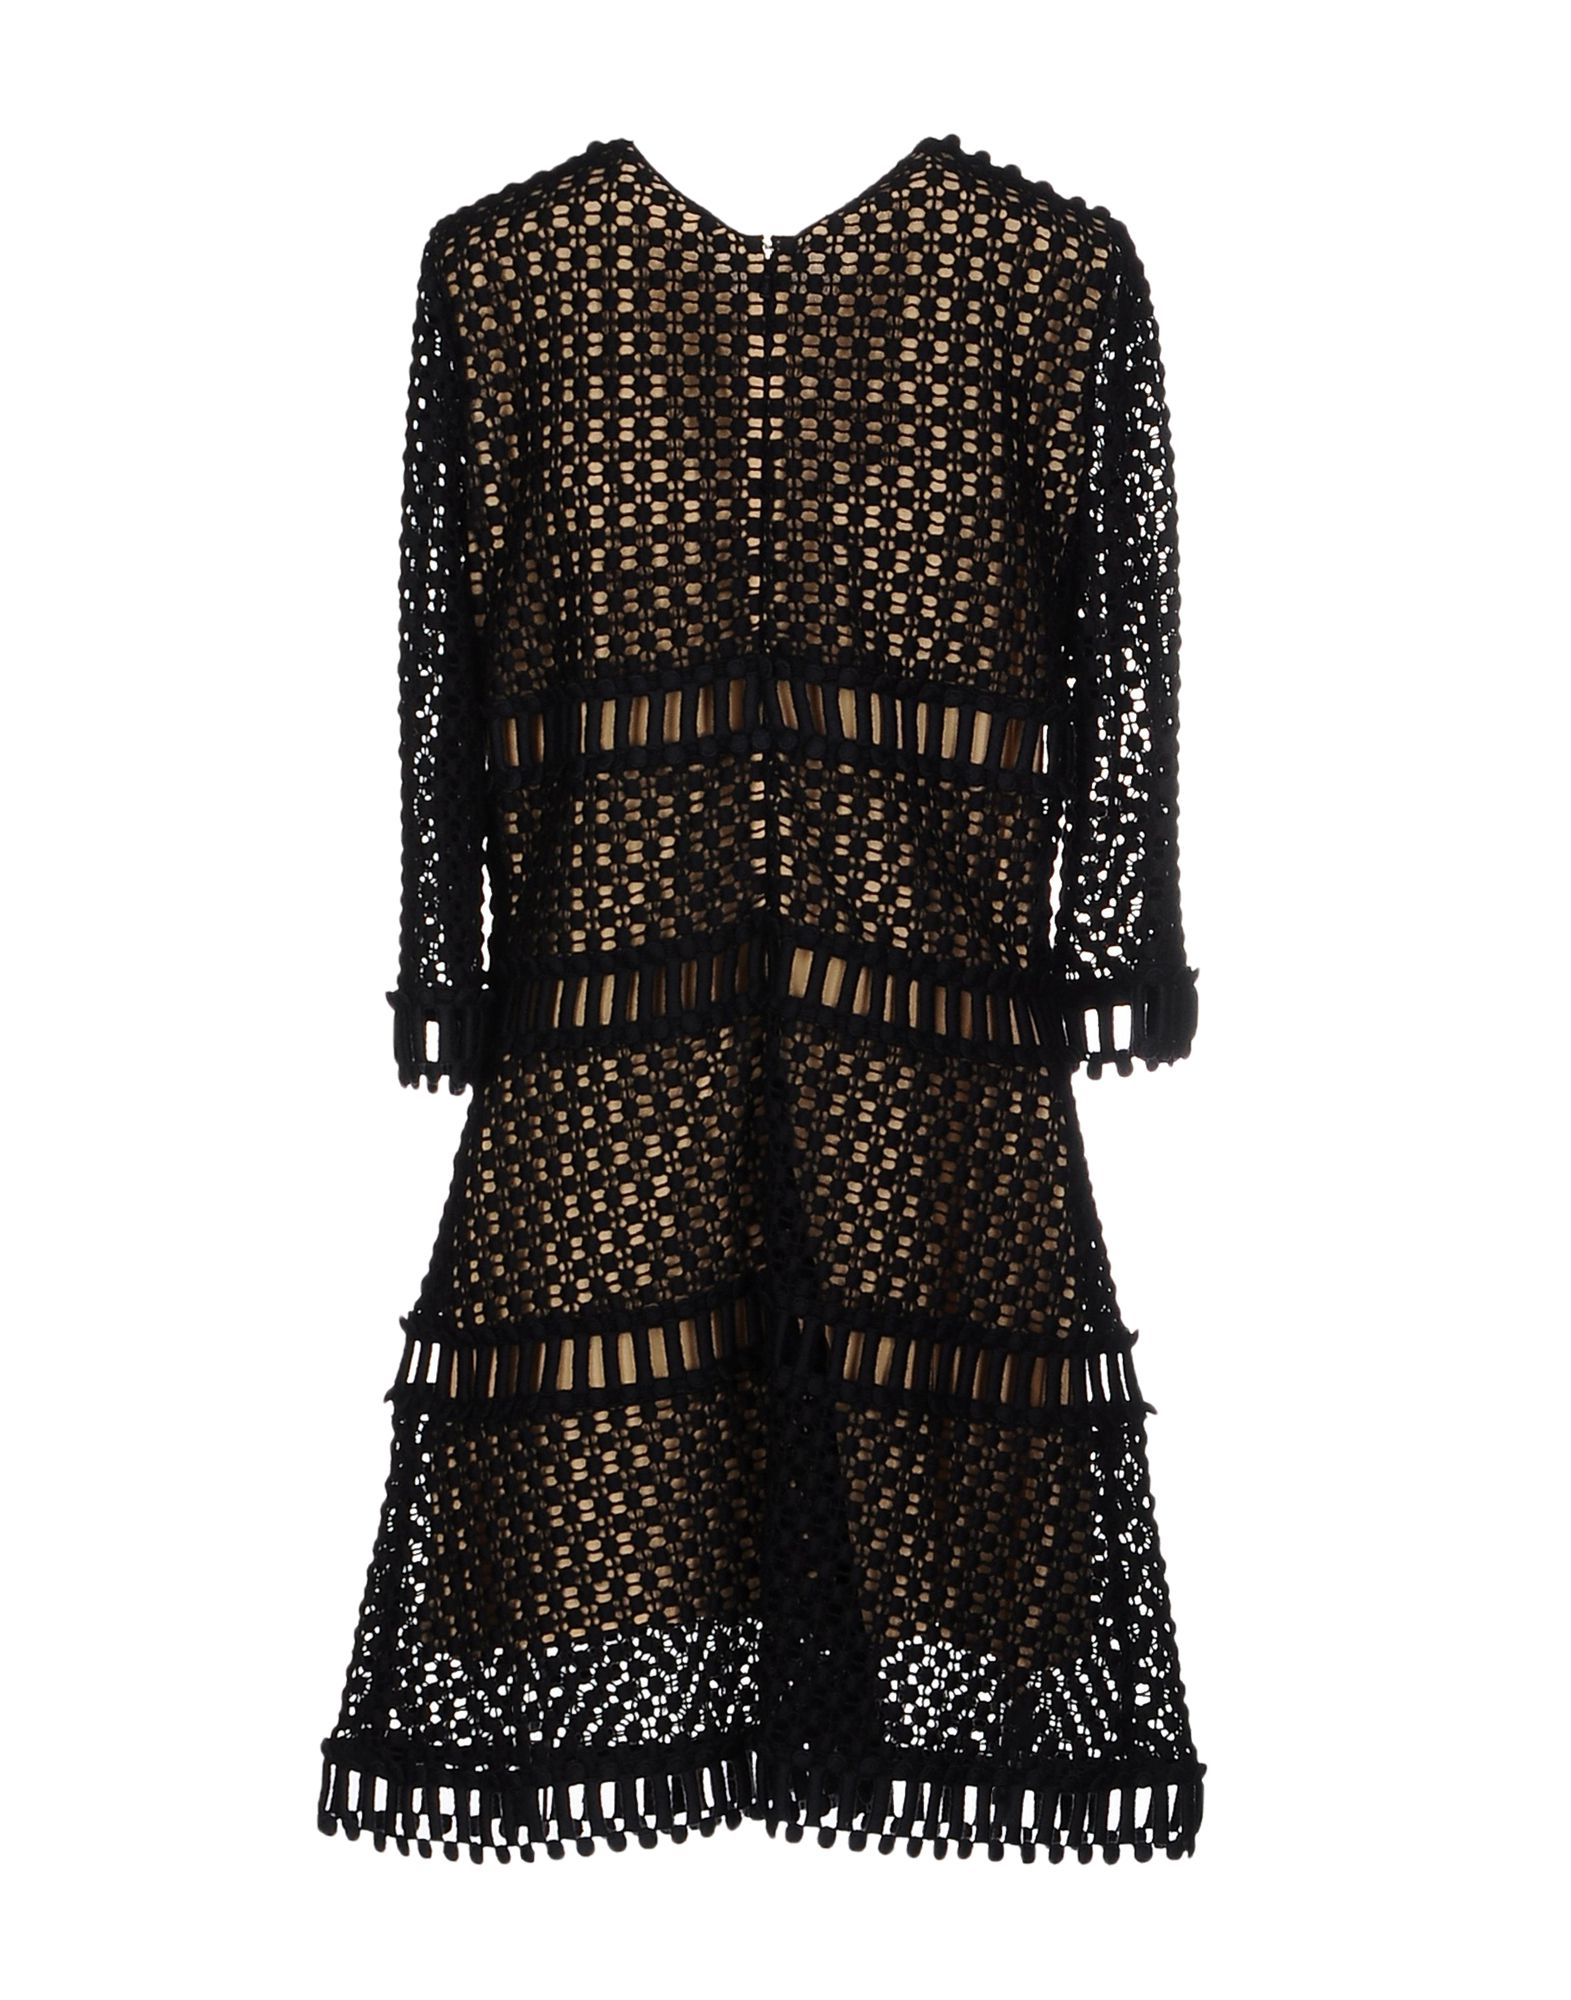 Chloé Lace Crochet Wool-Blend Dress in Navy (Black) - Lyst